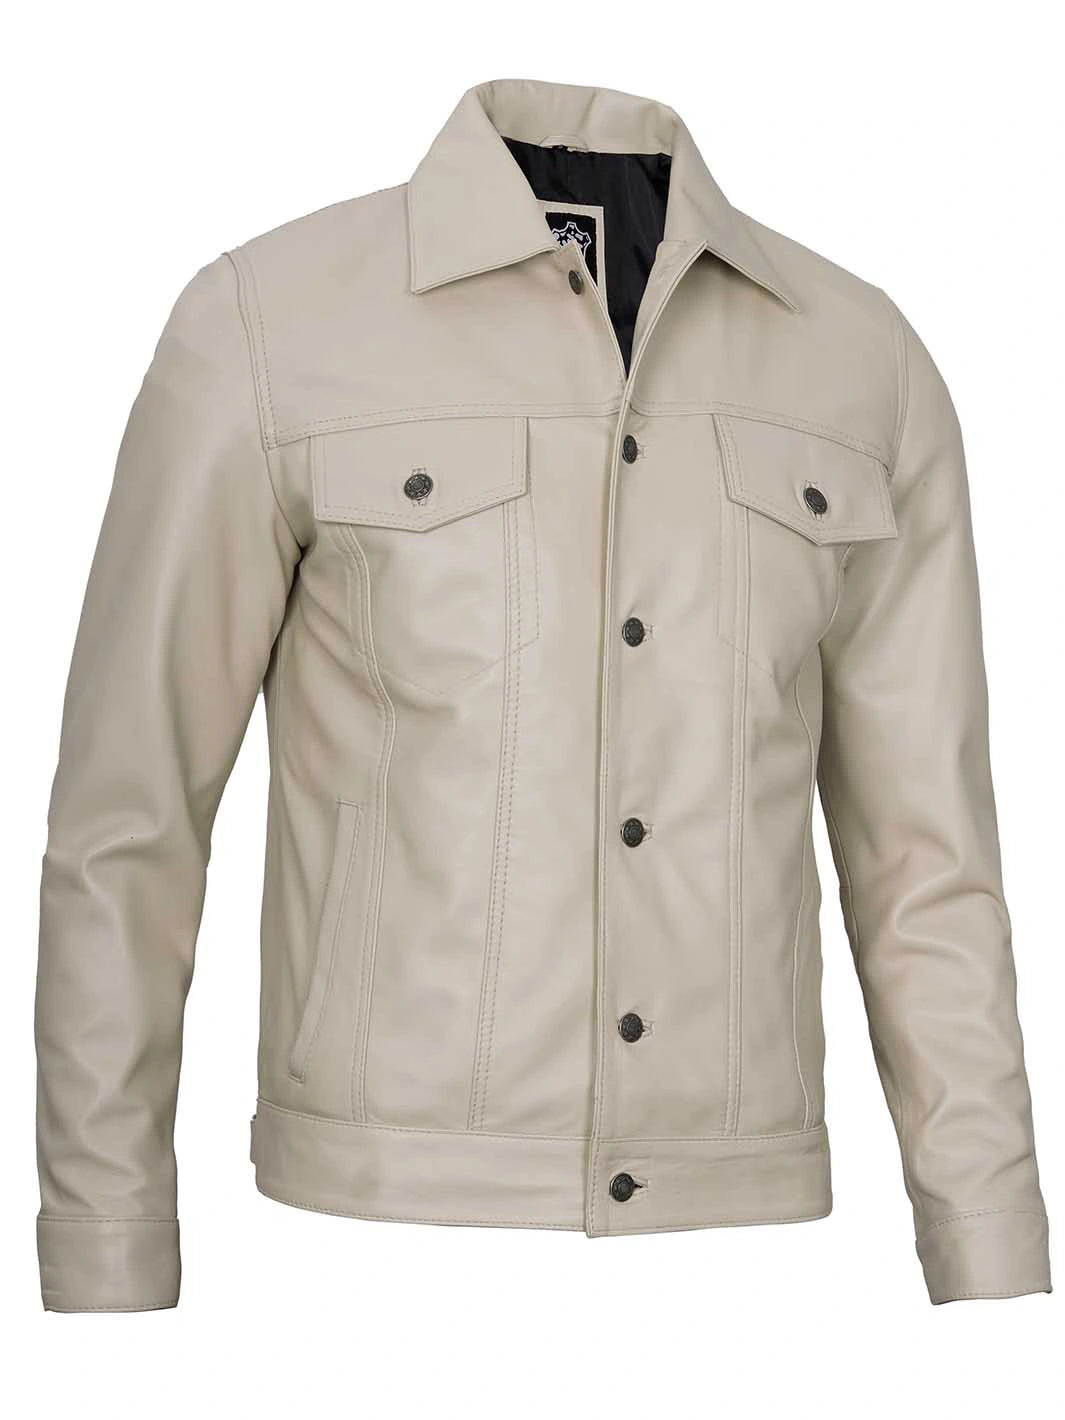 Real leather beige jacket for men